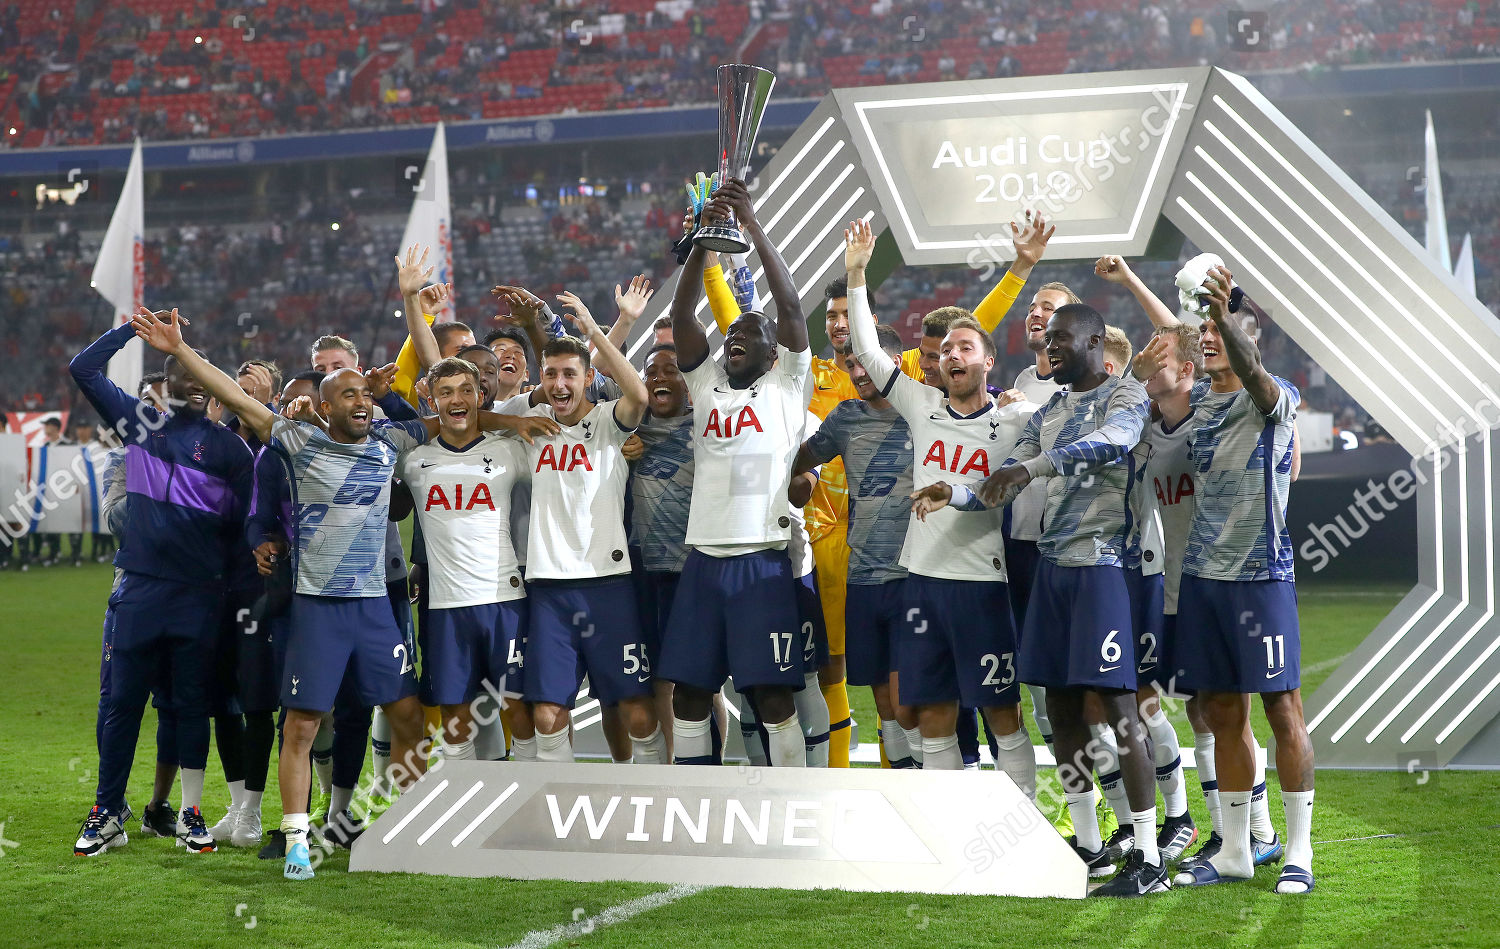 Tottenham Hotspur wins the 2019 Audi Cup